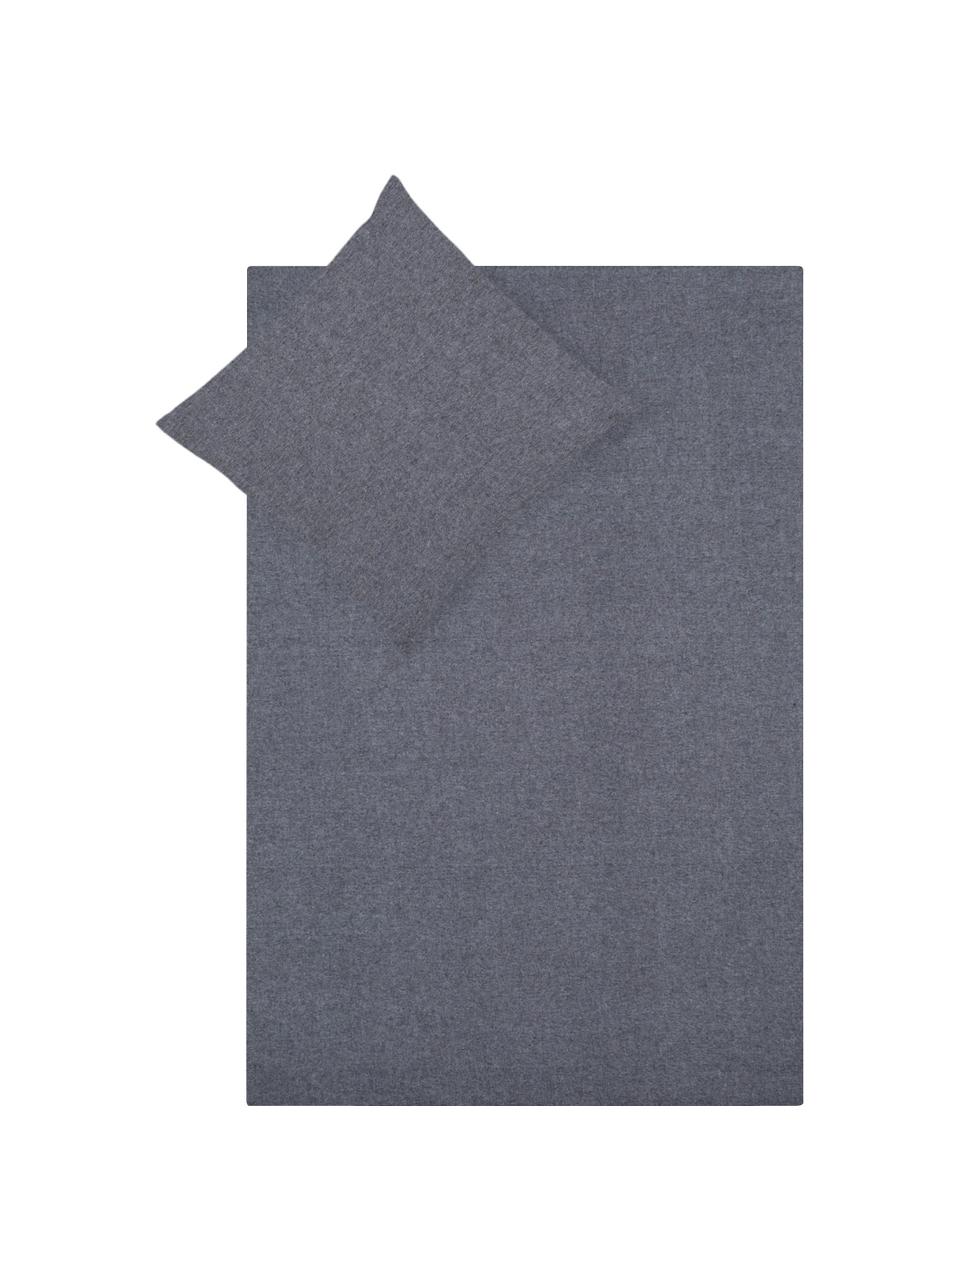 Flanell-Bettwäsche Pure Craft mit Stickerei, Webart: Flanell Flanell ist ein k, Grau, 135 x 200 cm + 1 Kissen 80 x 80 cm